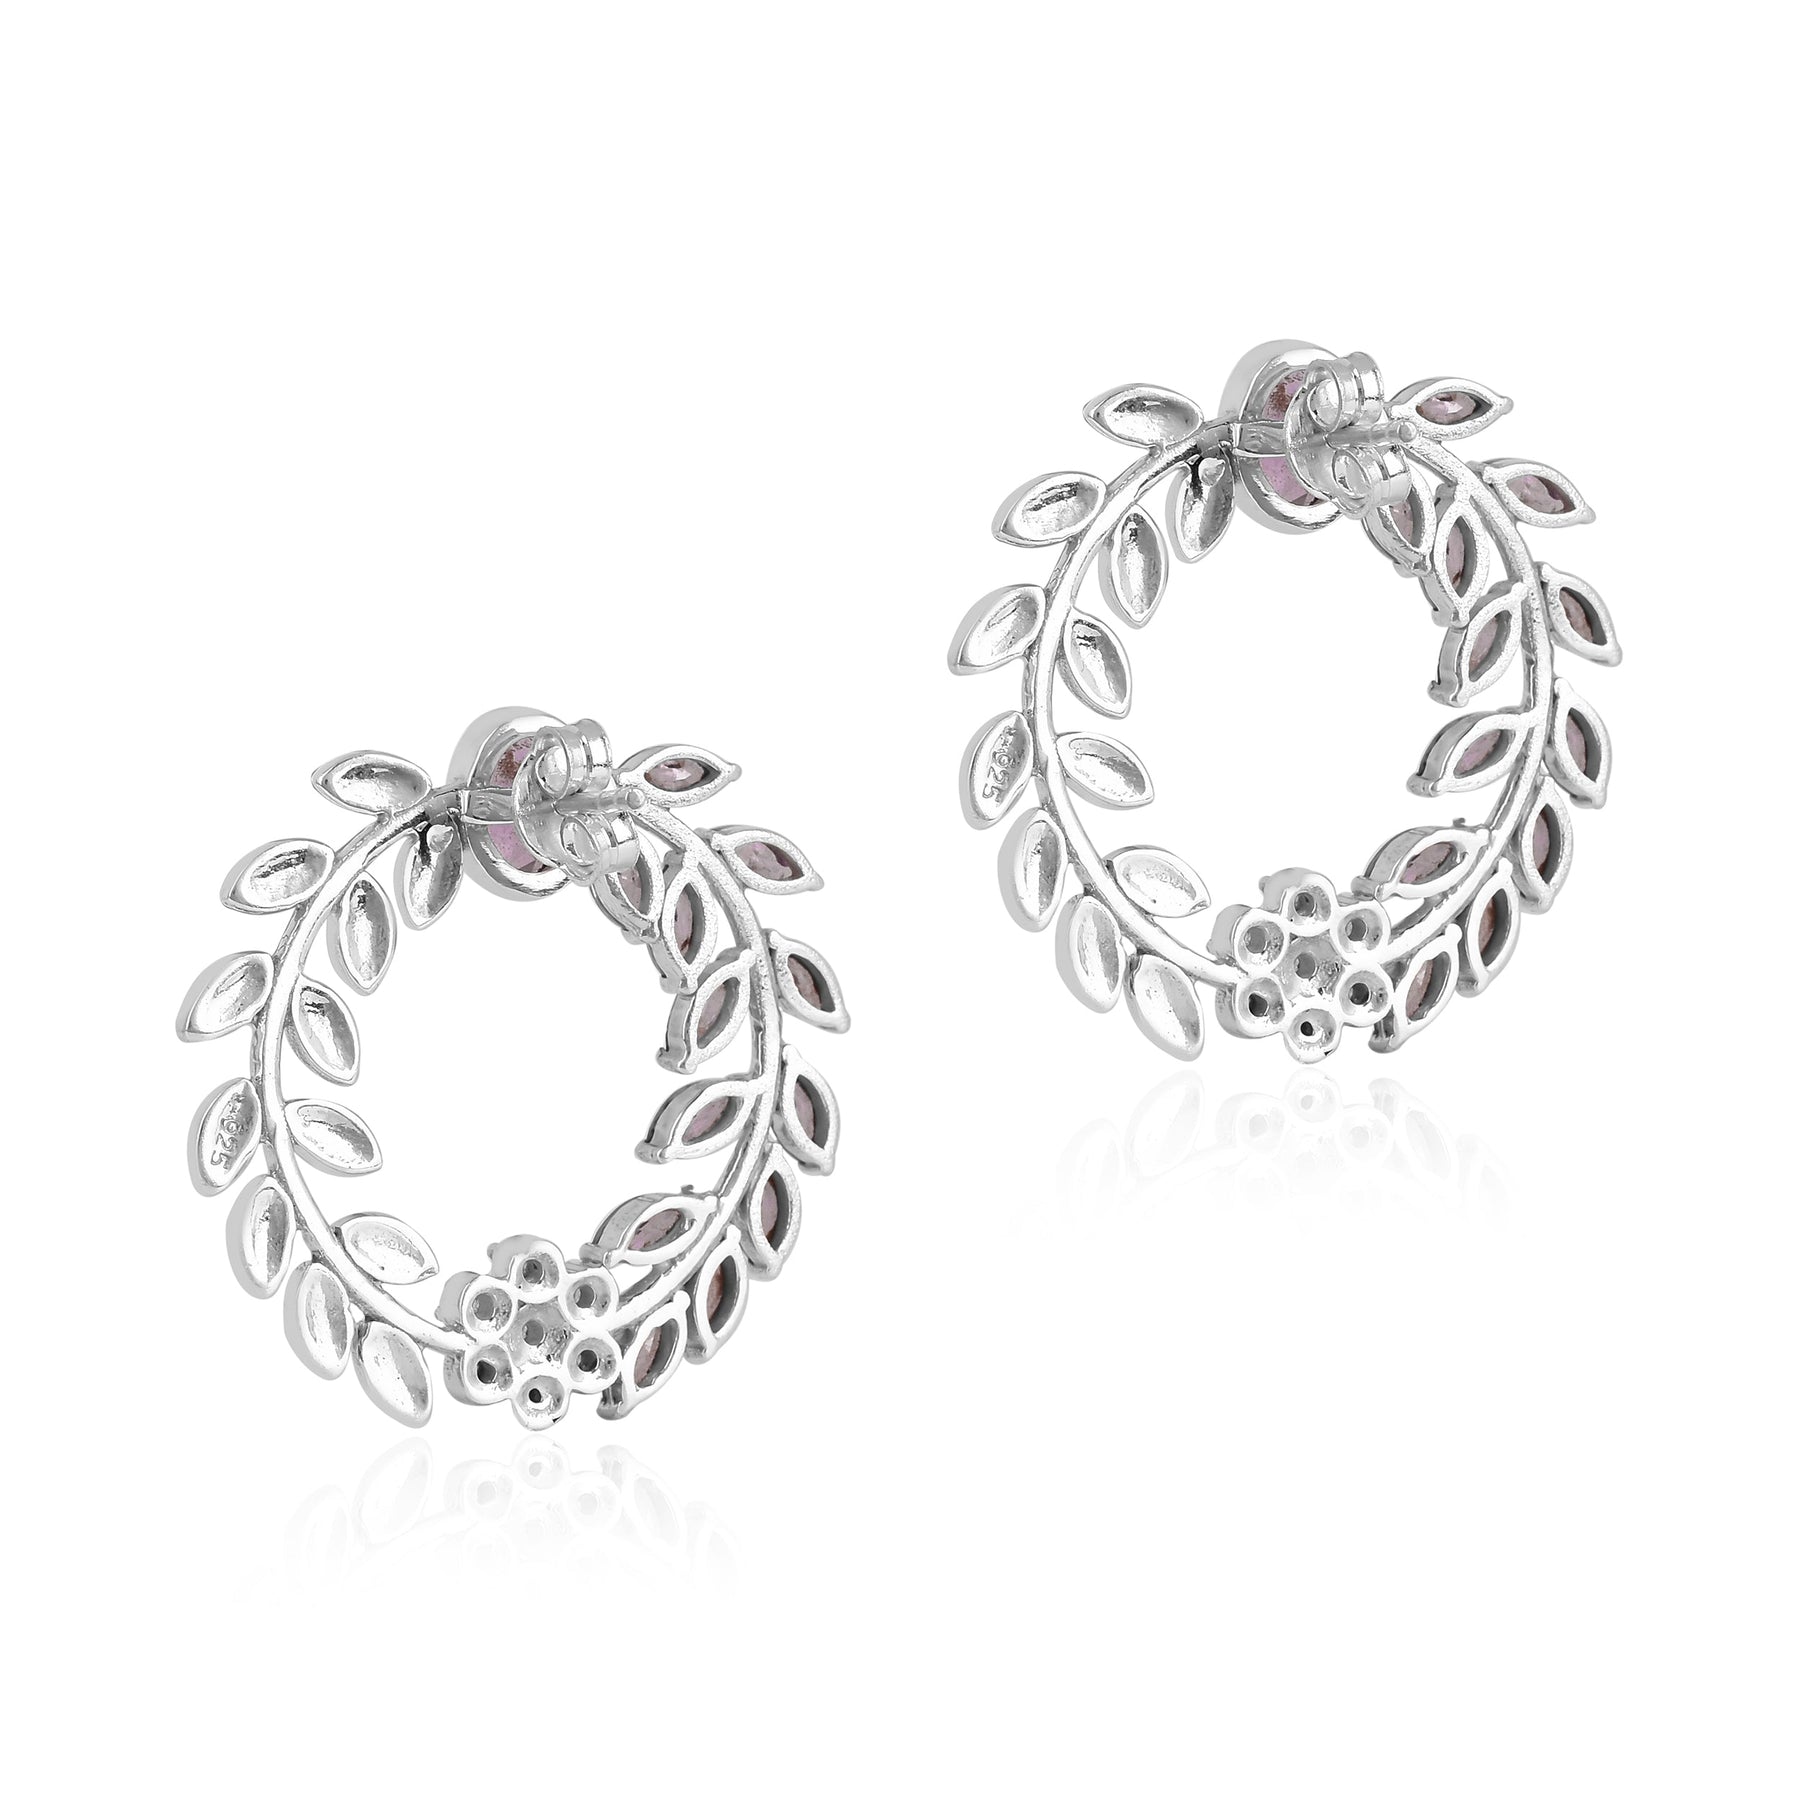 Amethyst Wreath Broad Silver Earrings